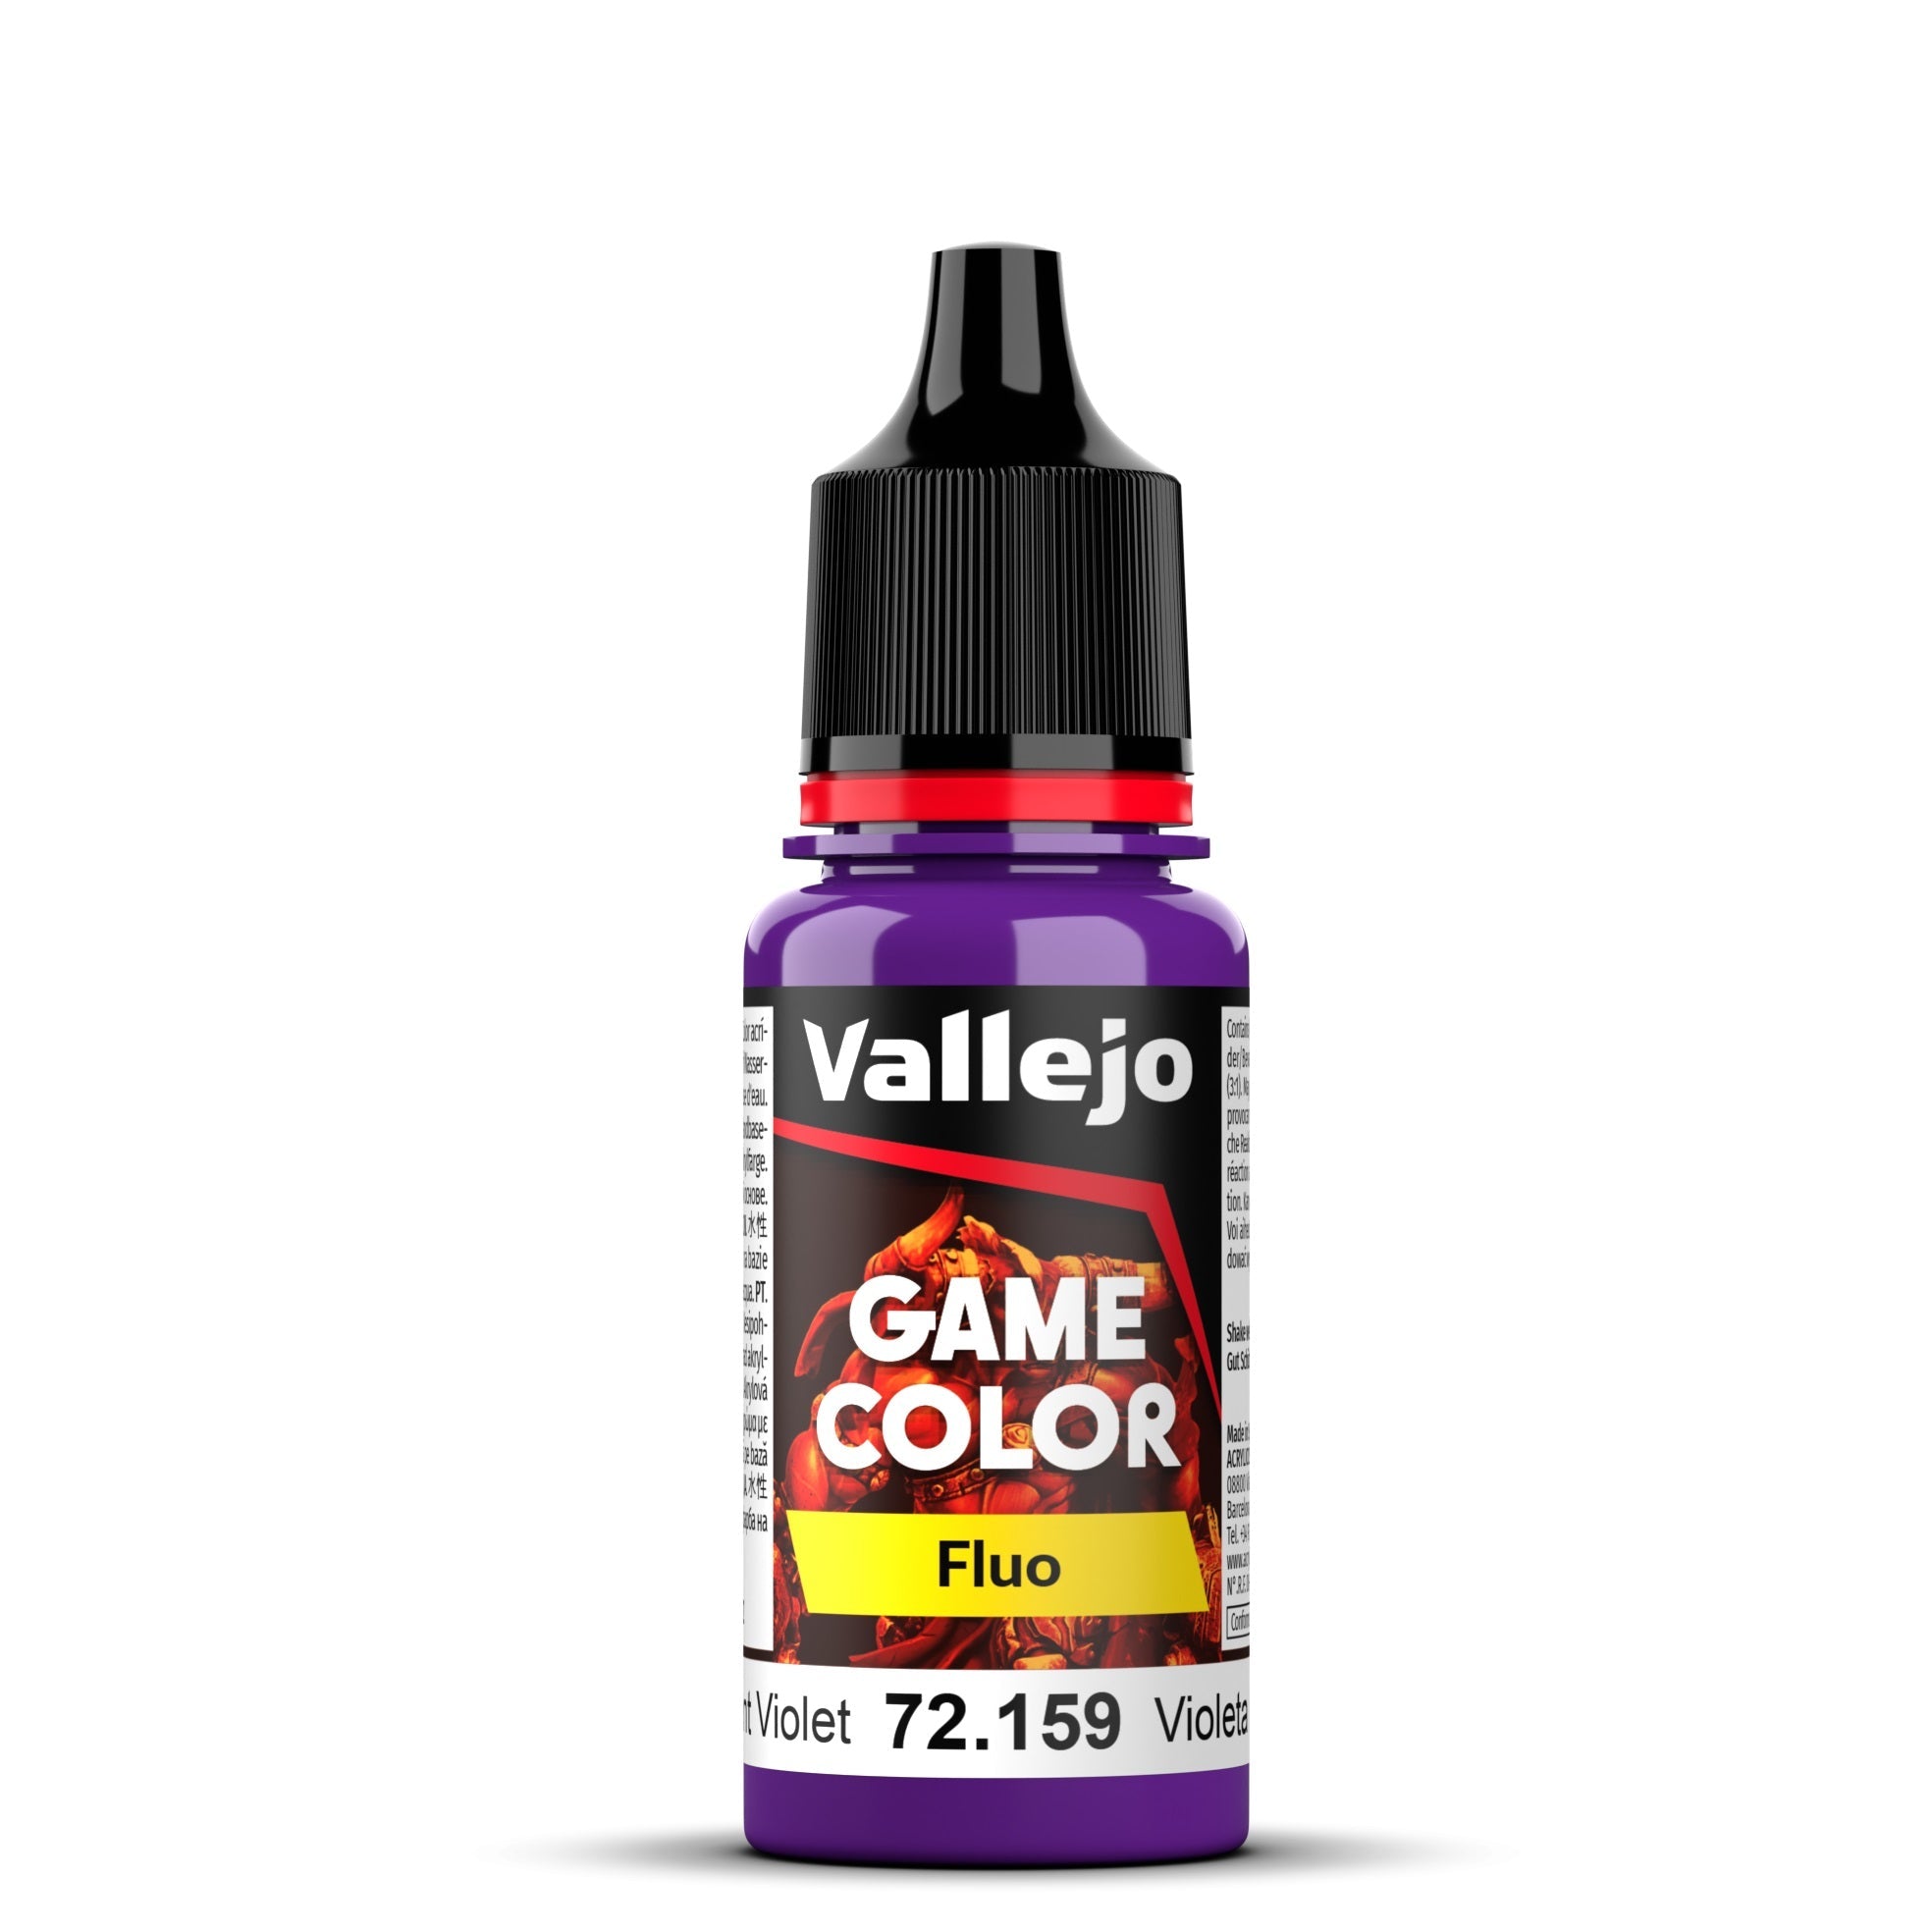 Vallejo Game Color, Fluorescent Violet, 18 ml